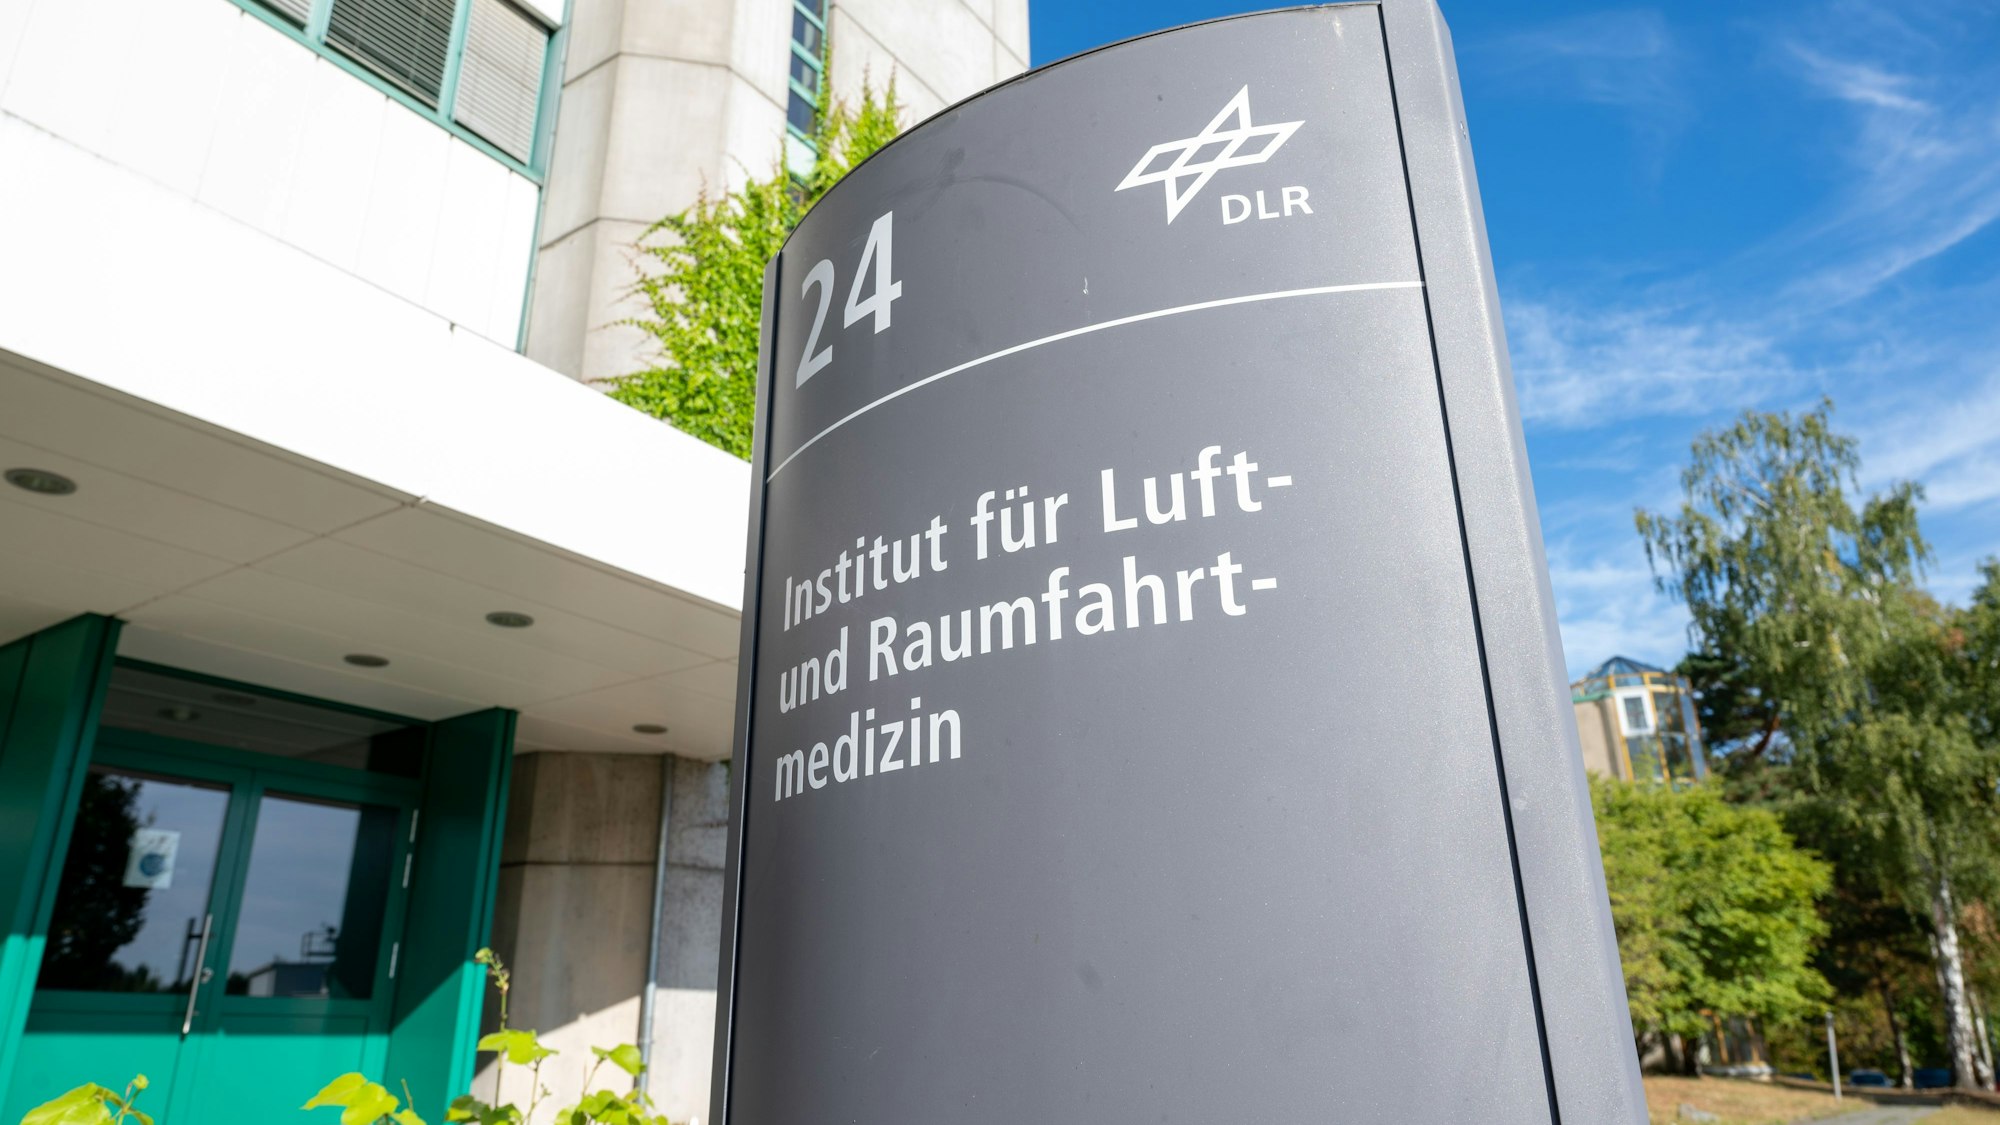 Haupteingang des DLR Instituts für Luft- und Raumfahrtmedizin in Köln.